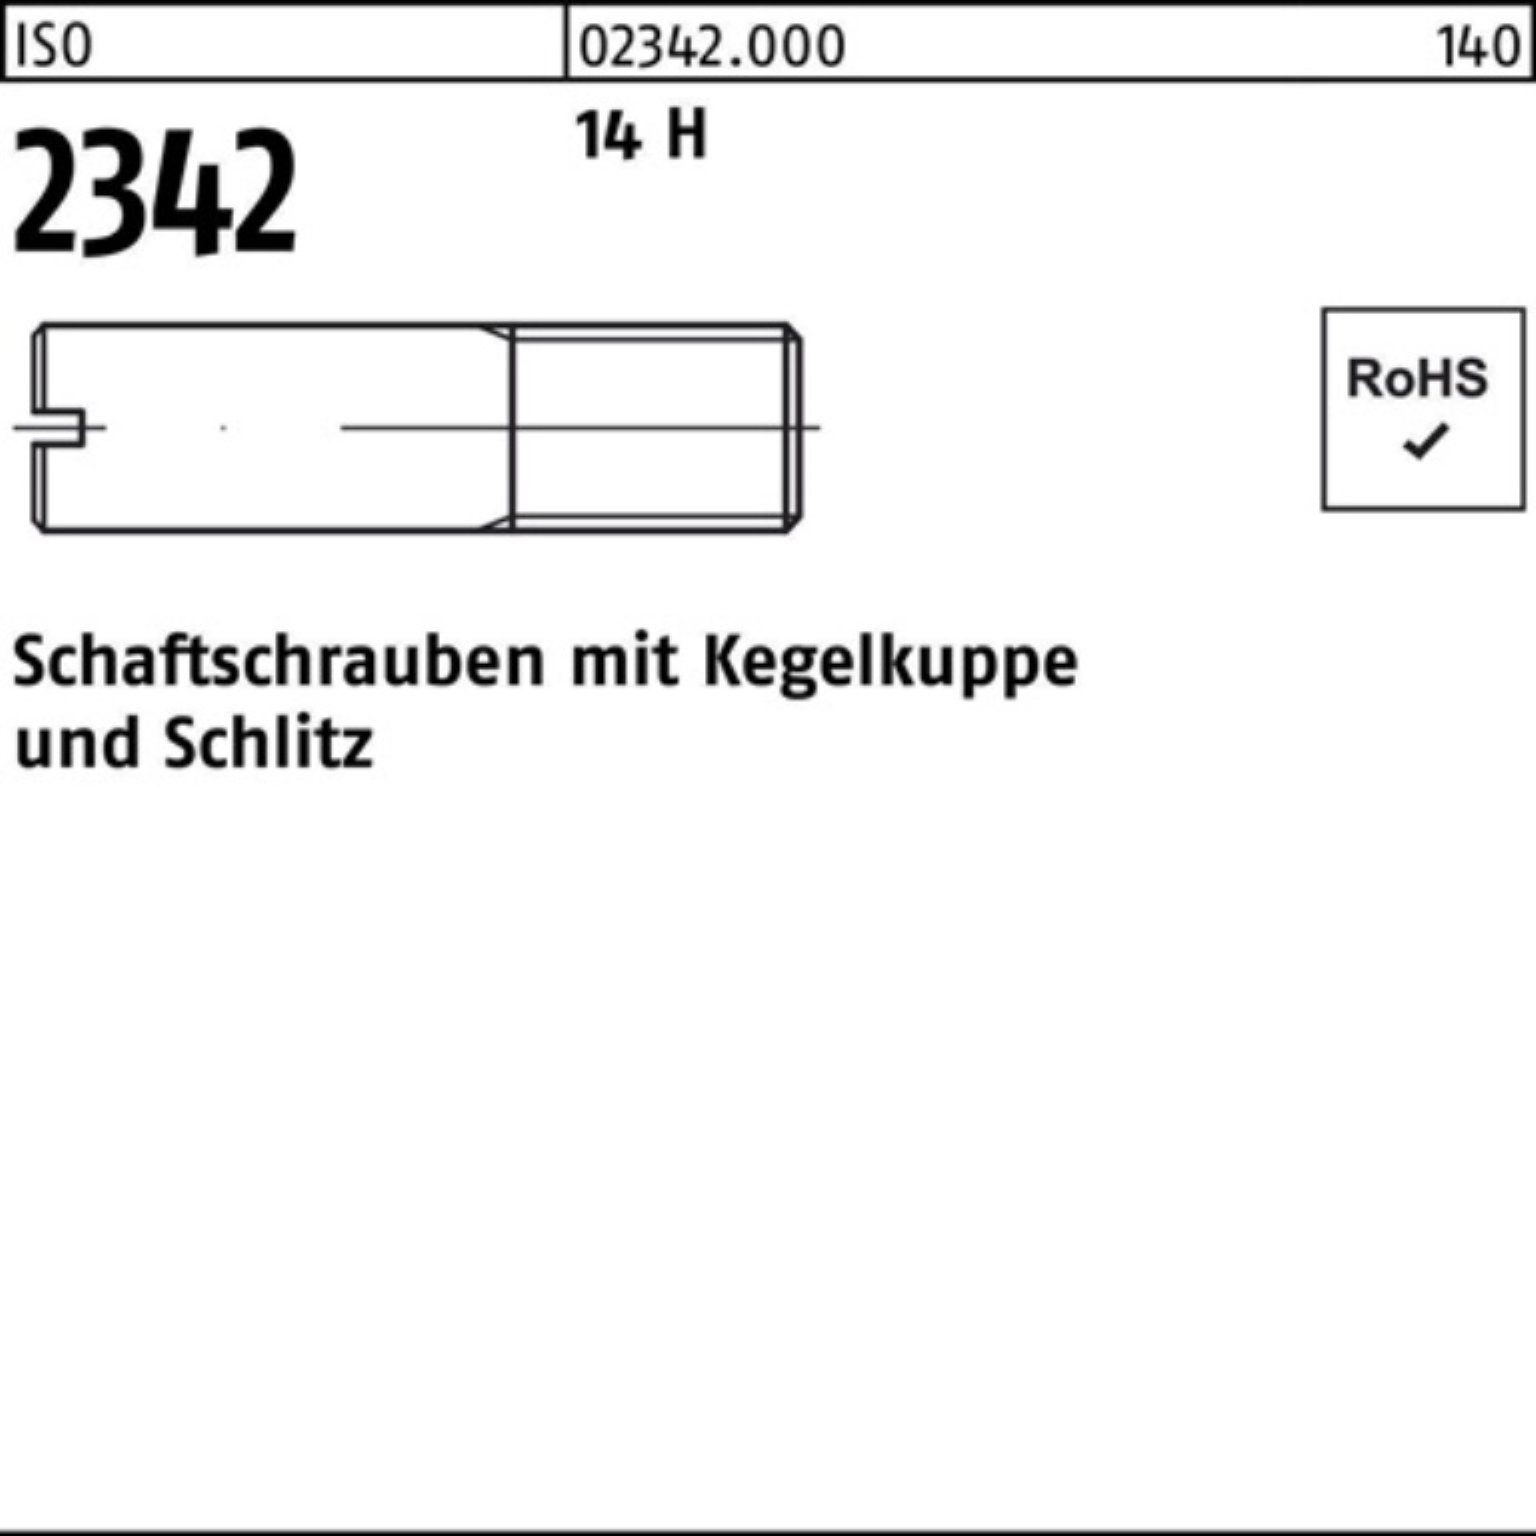 Reyher Schraube 100er Pack Schaftschraube ISO 2342 Kegelkuppe/Schlitz M5x 12 14 H 100